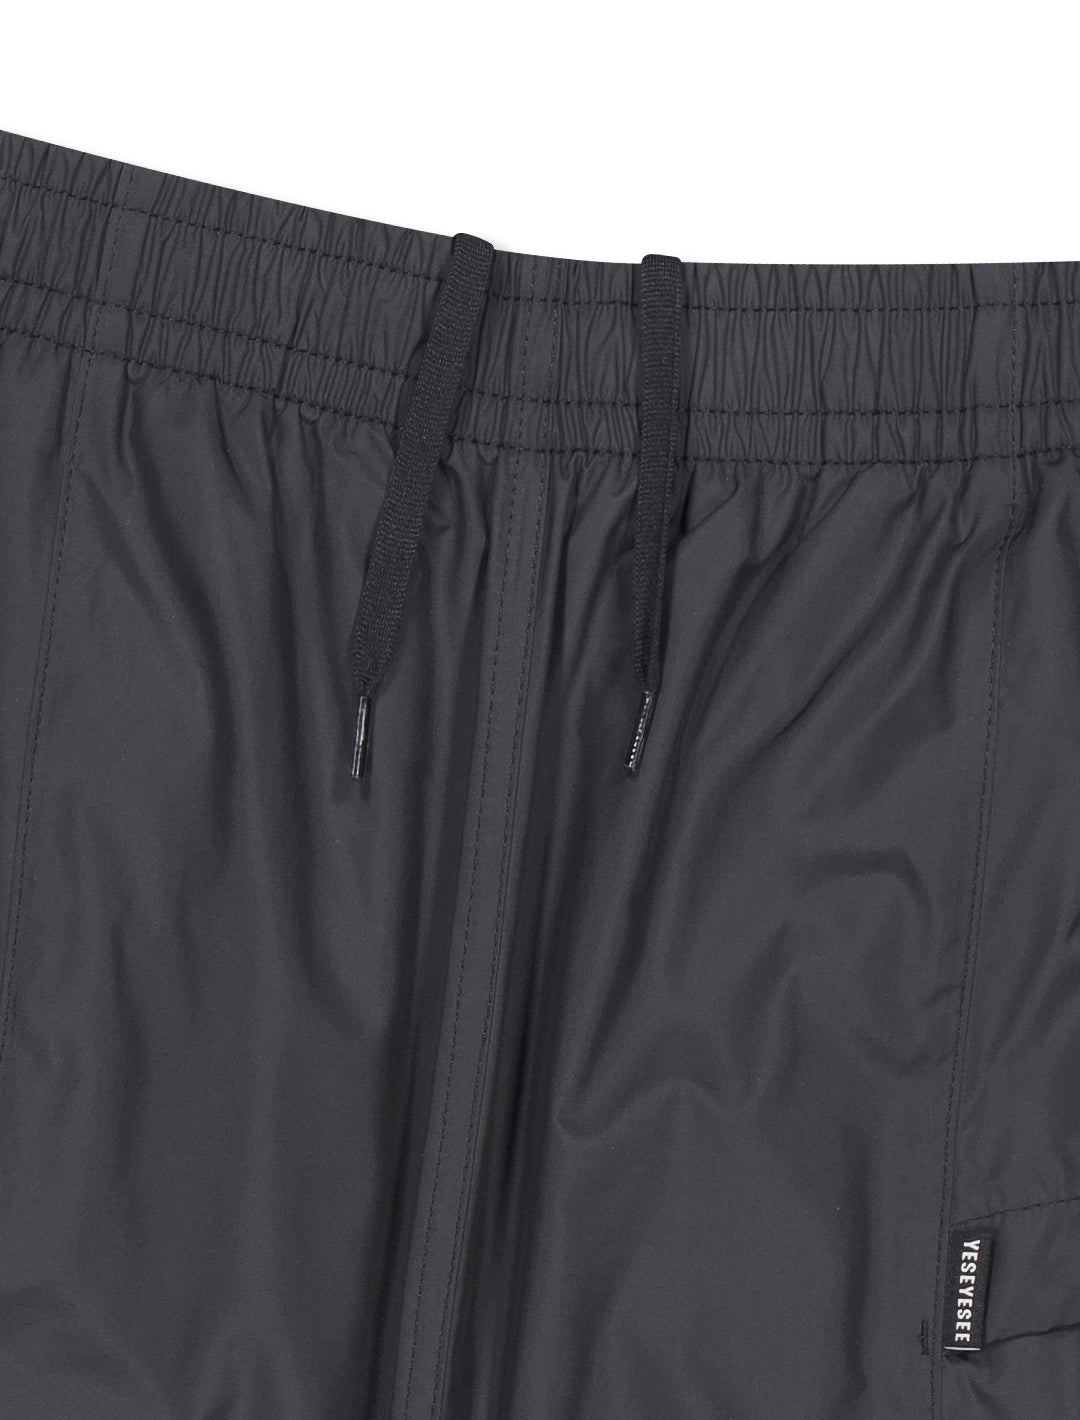 Paneled Comfort Shorts